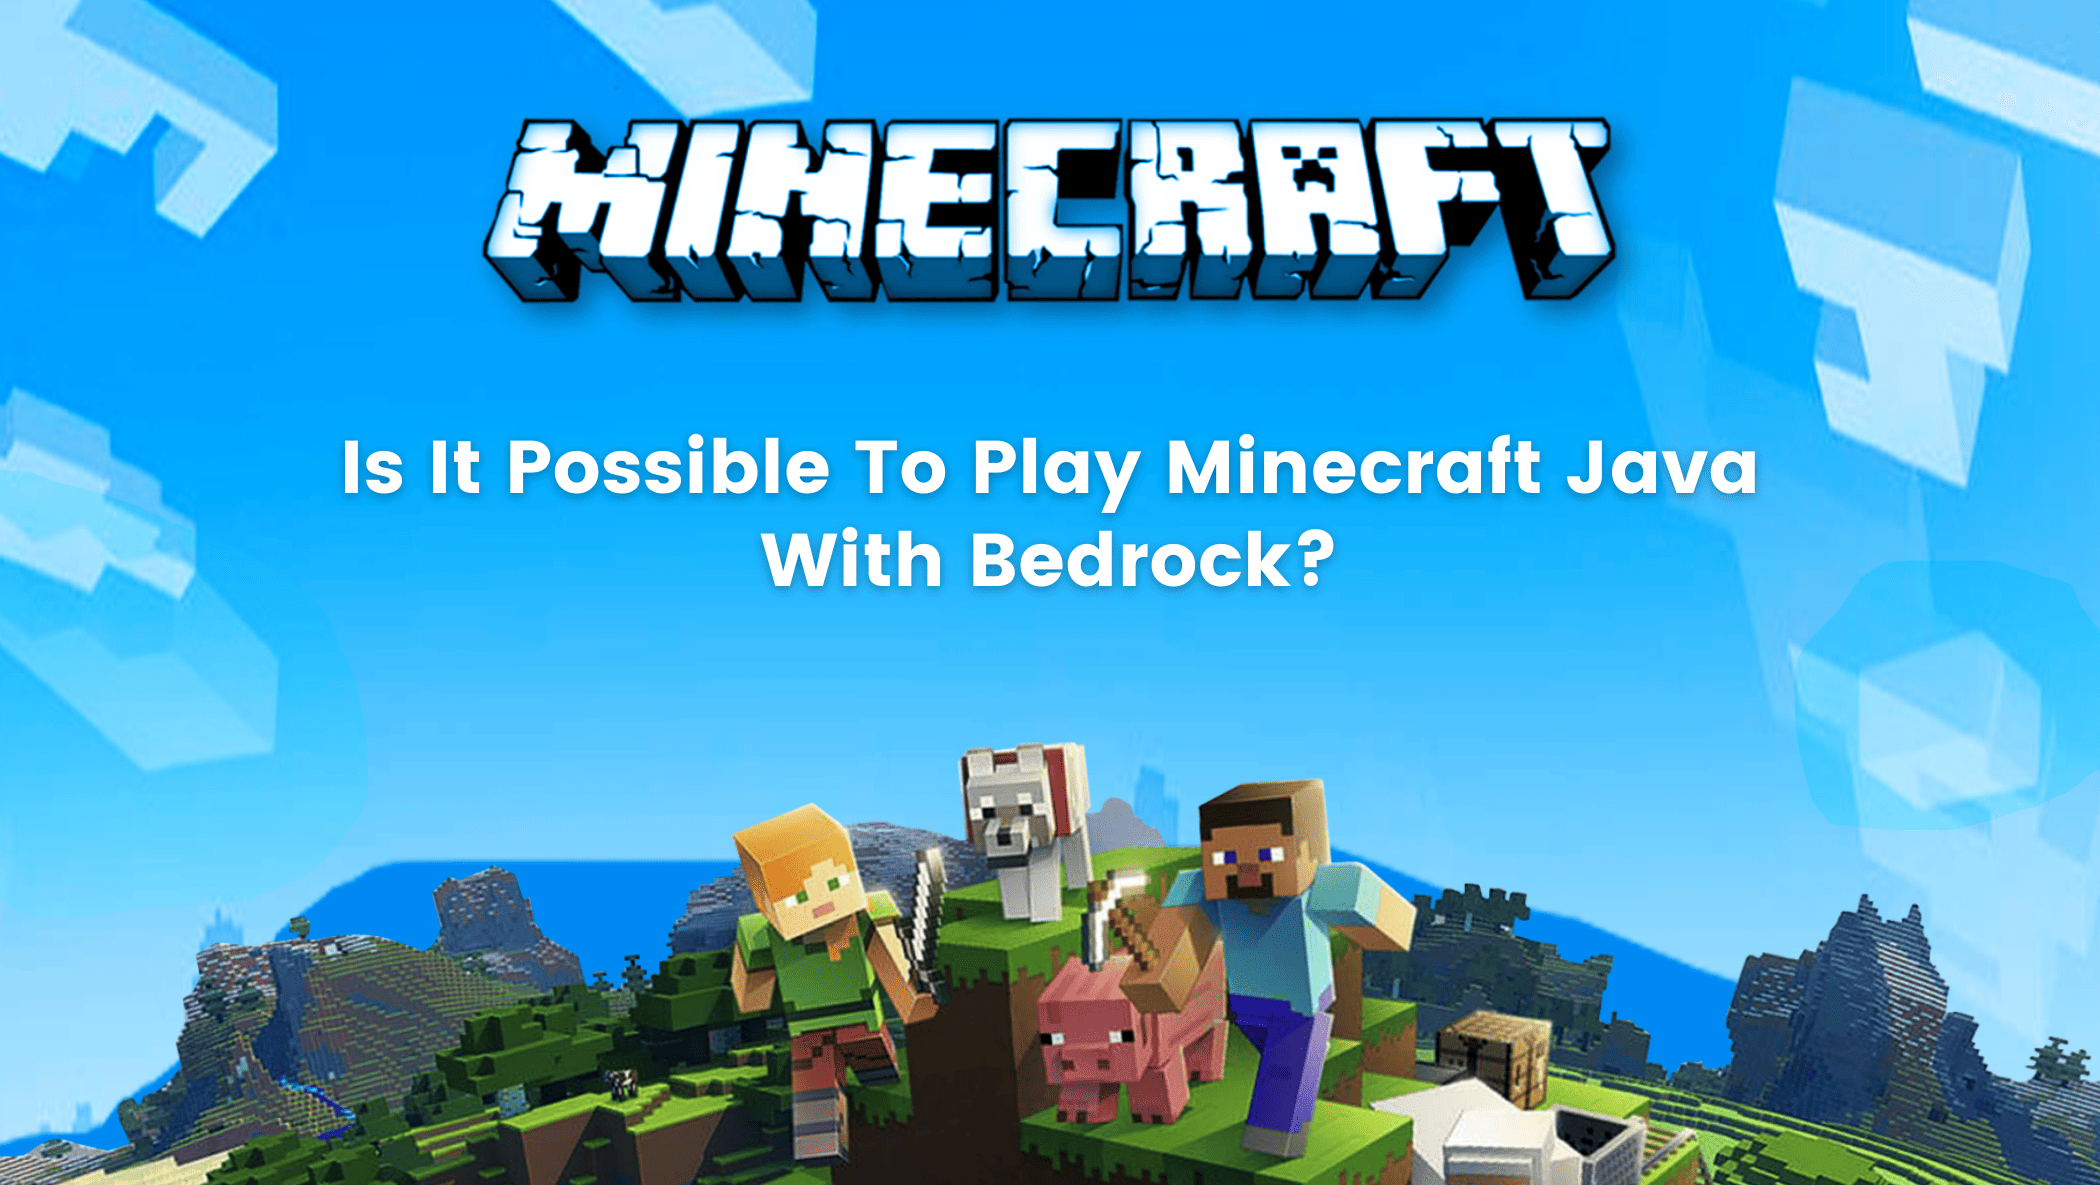 เป็นไปได้ไหมที่จะเล่น Minecraft Java กับข้อเท็จจริง